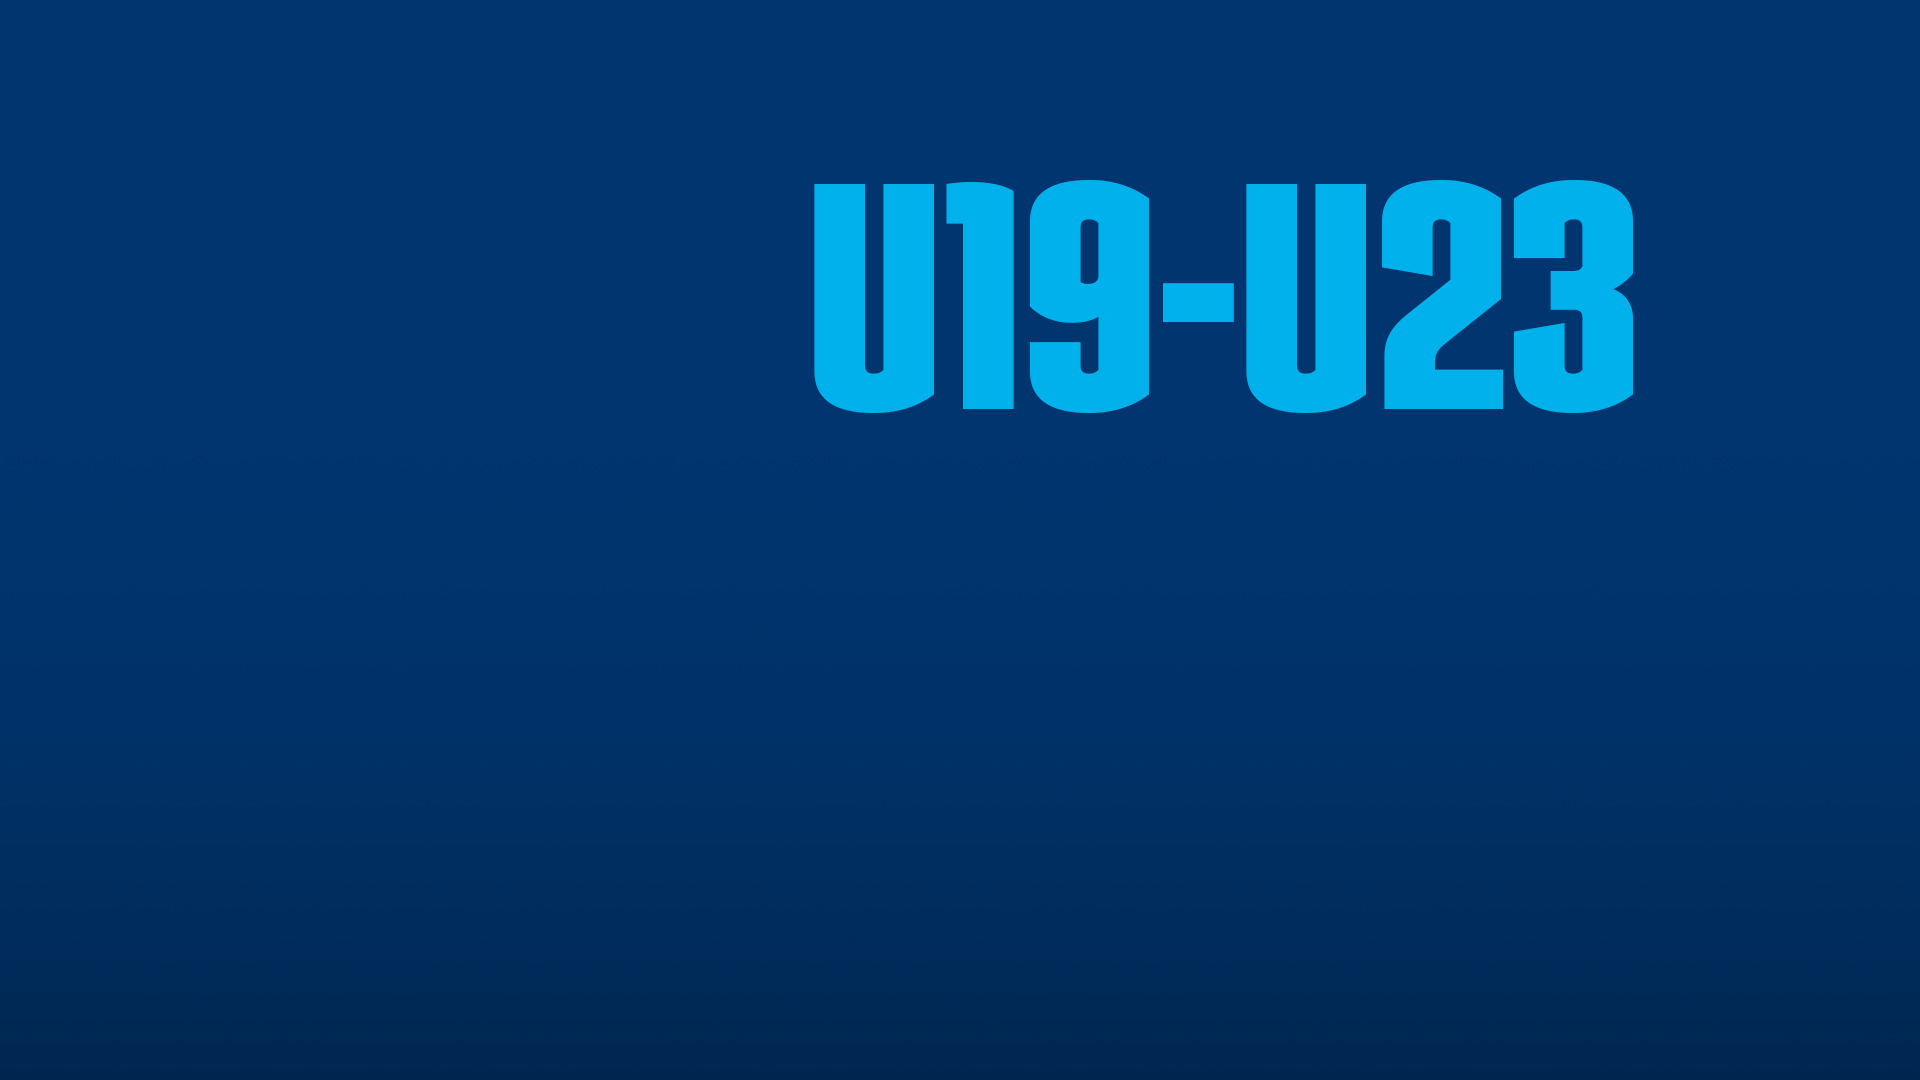 Übergangsbereich_U19-U23